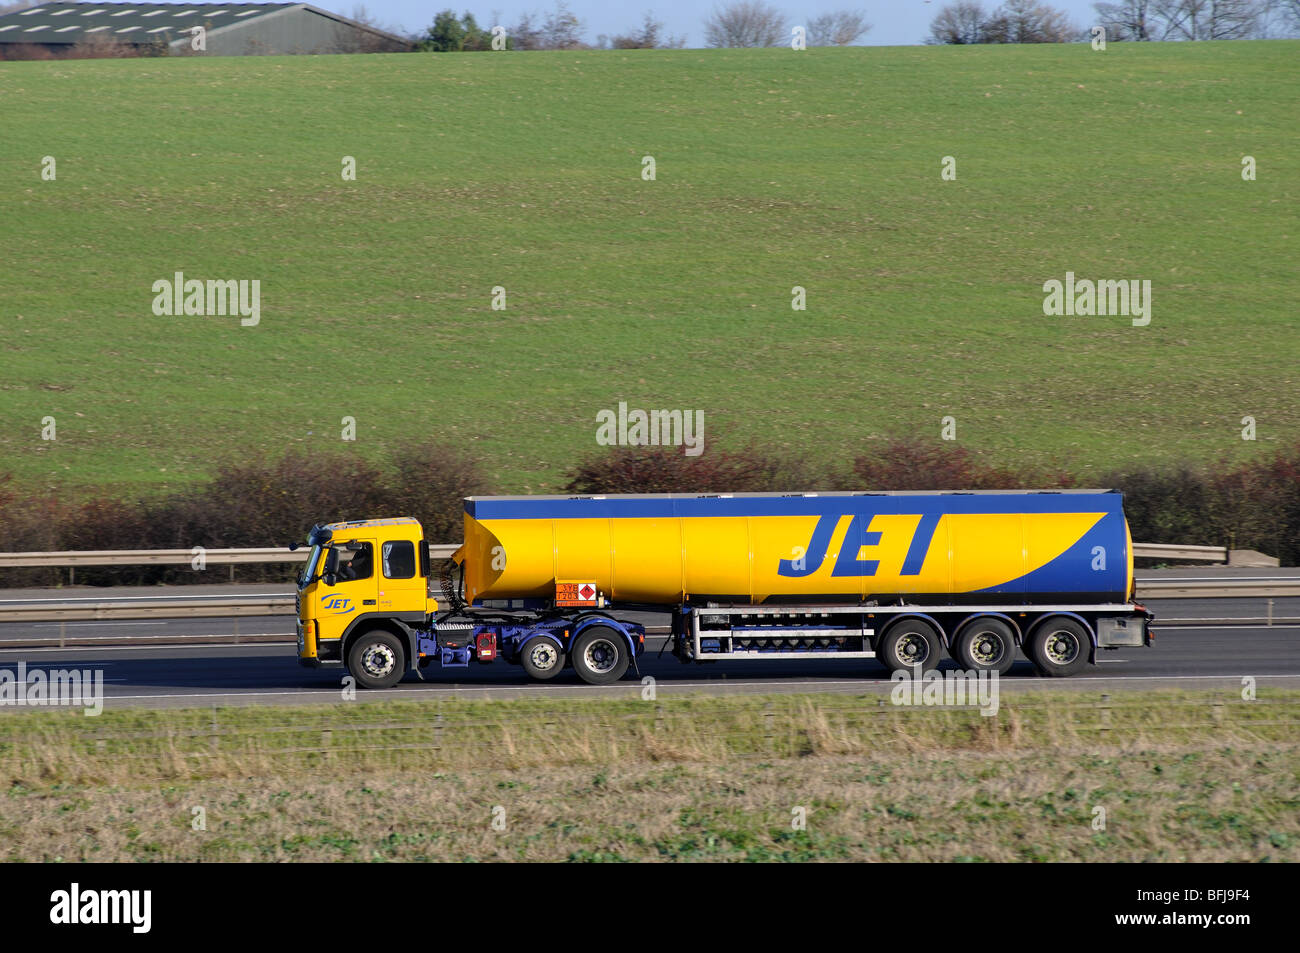 Jet tanker lorry on M40 motorway, Warwickshire, England, UK Stock Photo